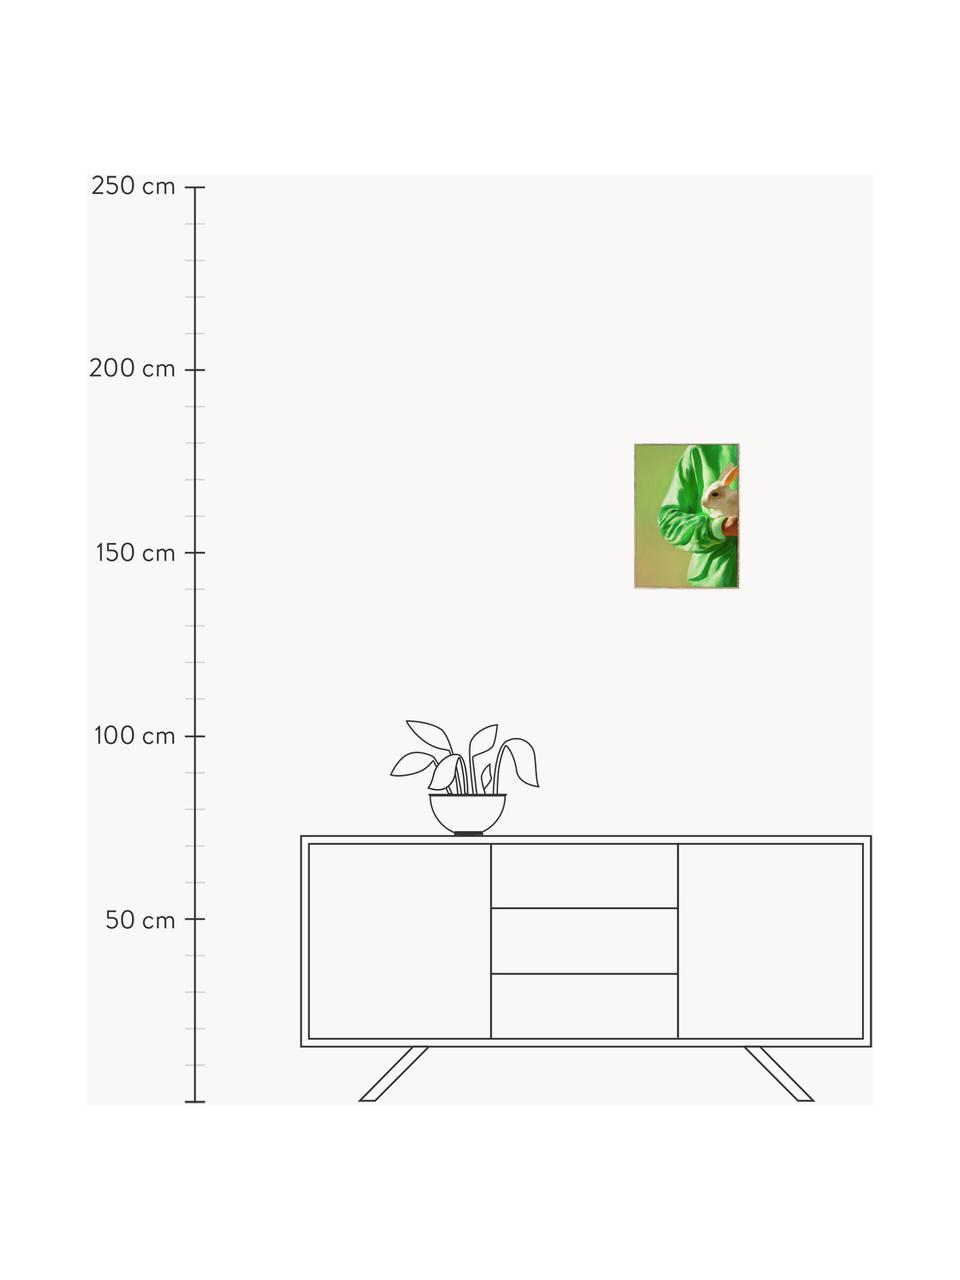 Plagát White Rabbit, 210 g matný papier Hahnemühle, digitálna tlač s 10 farbami odolnými voči UV žiareniu, Odtiene zelenej, Š 30 x V 40 cm